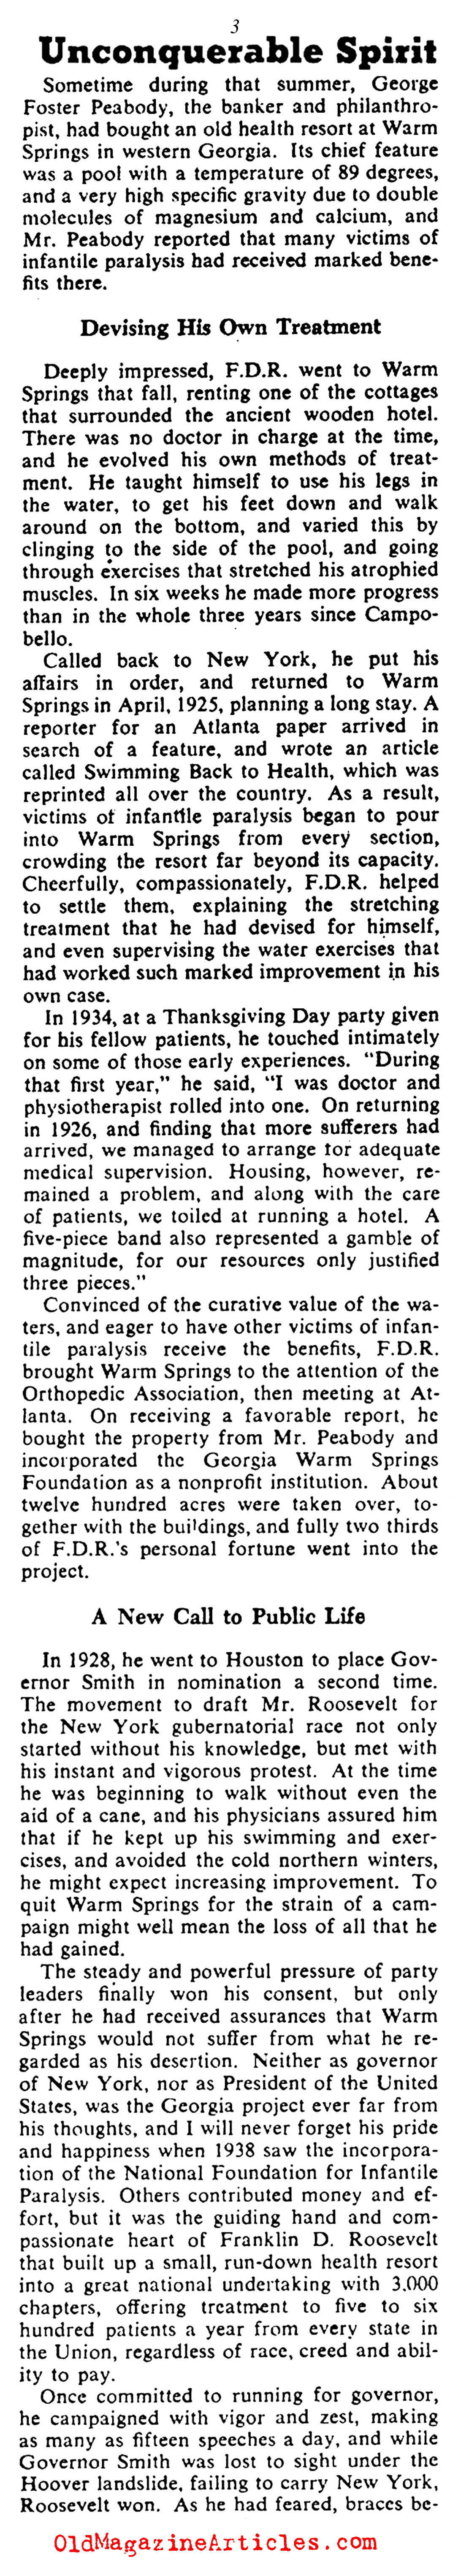 FDR's Doctor Speaks (Collier's Magazine, 1946)